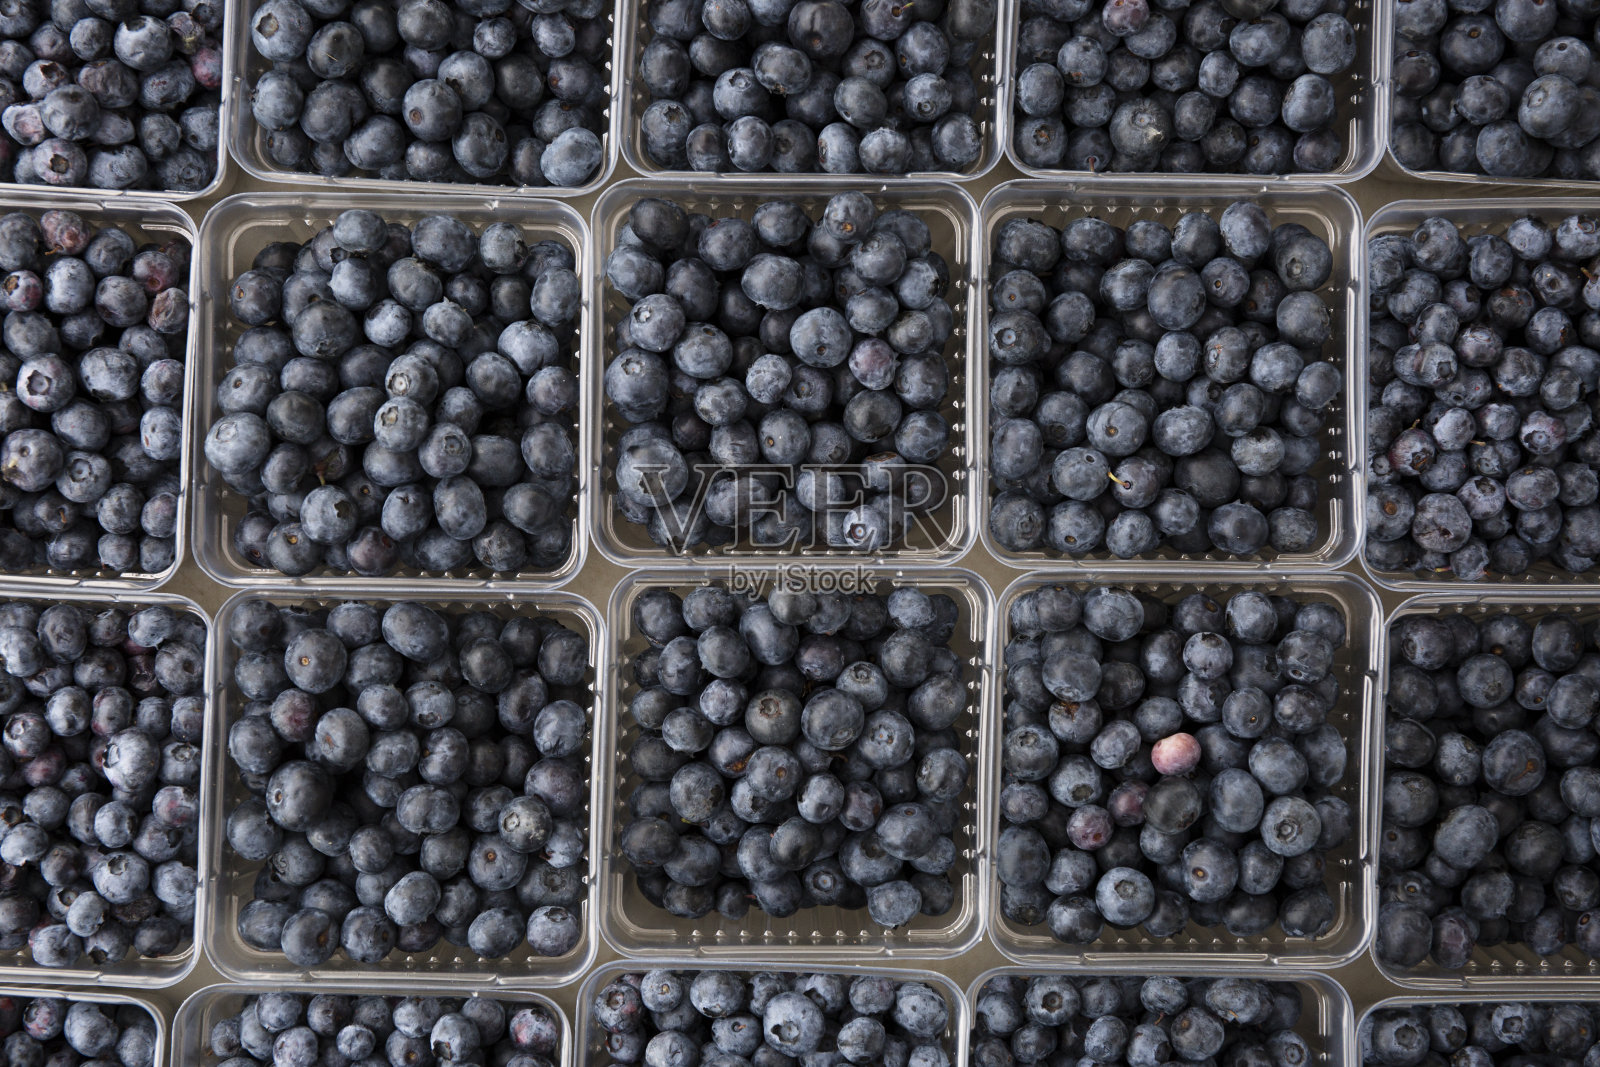 美丽的新鲜蓝莓在农贸市场的容器照片摄影图片